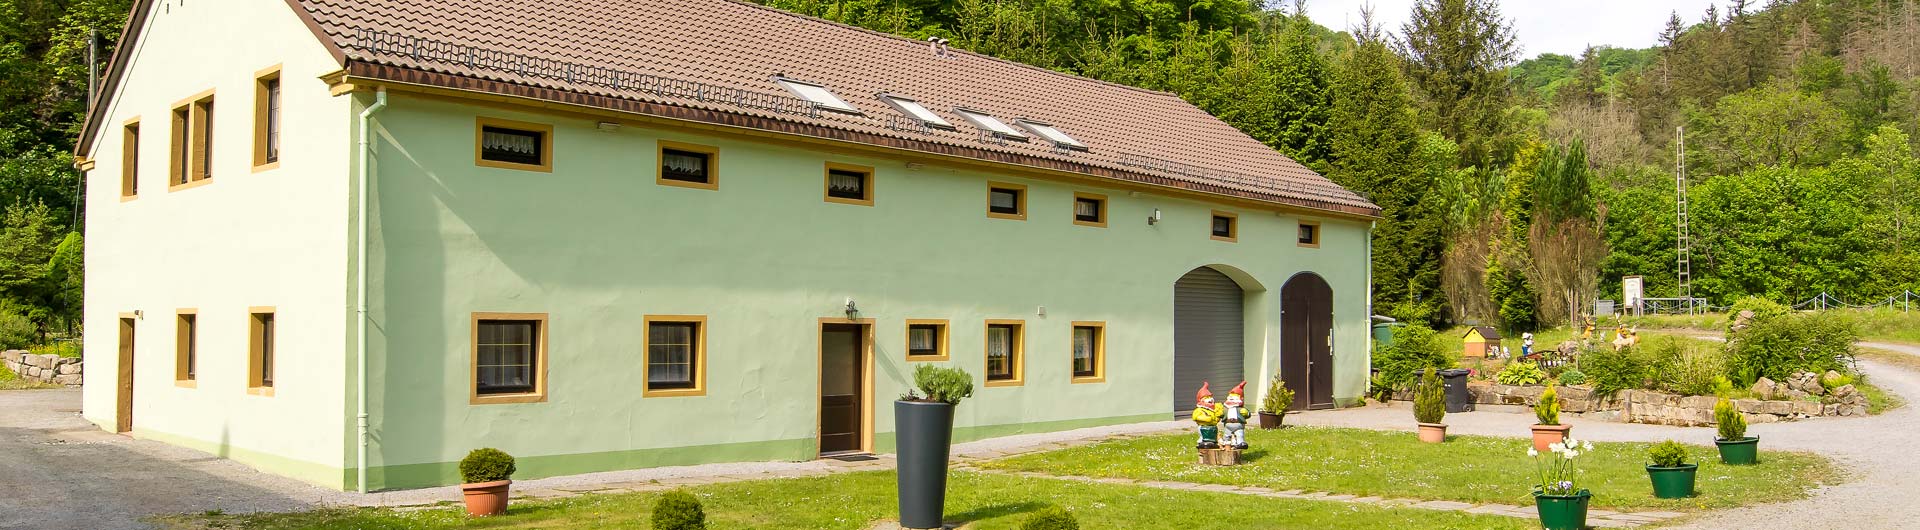 Mittelndorfer Mühle - Haus Waldesruh